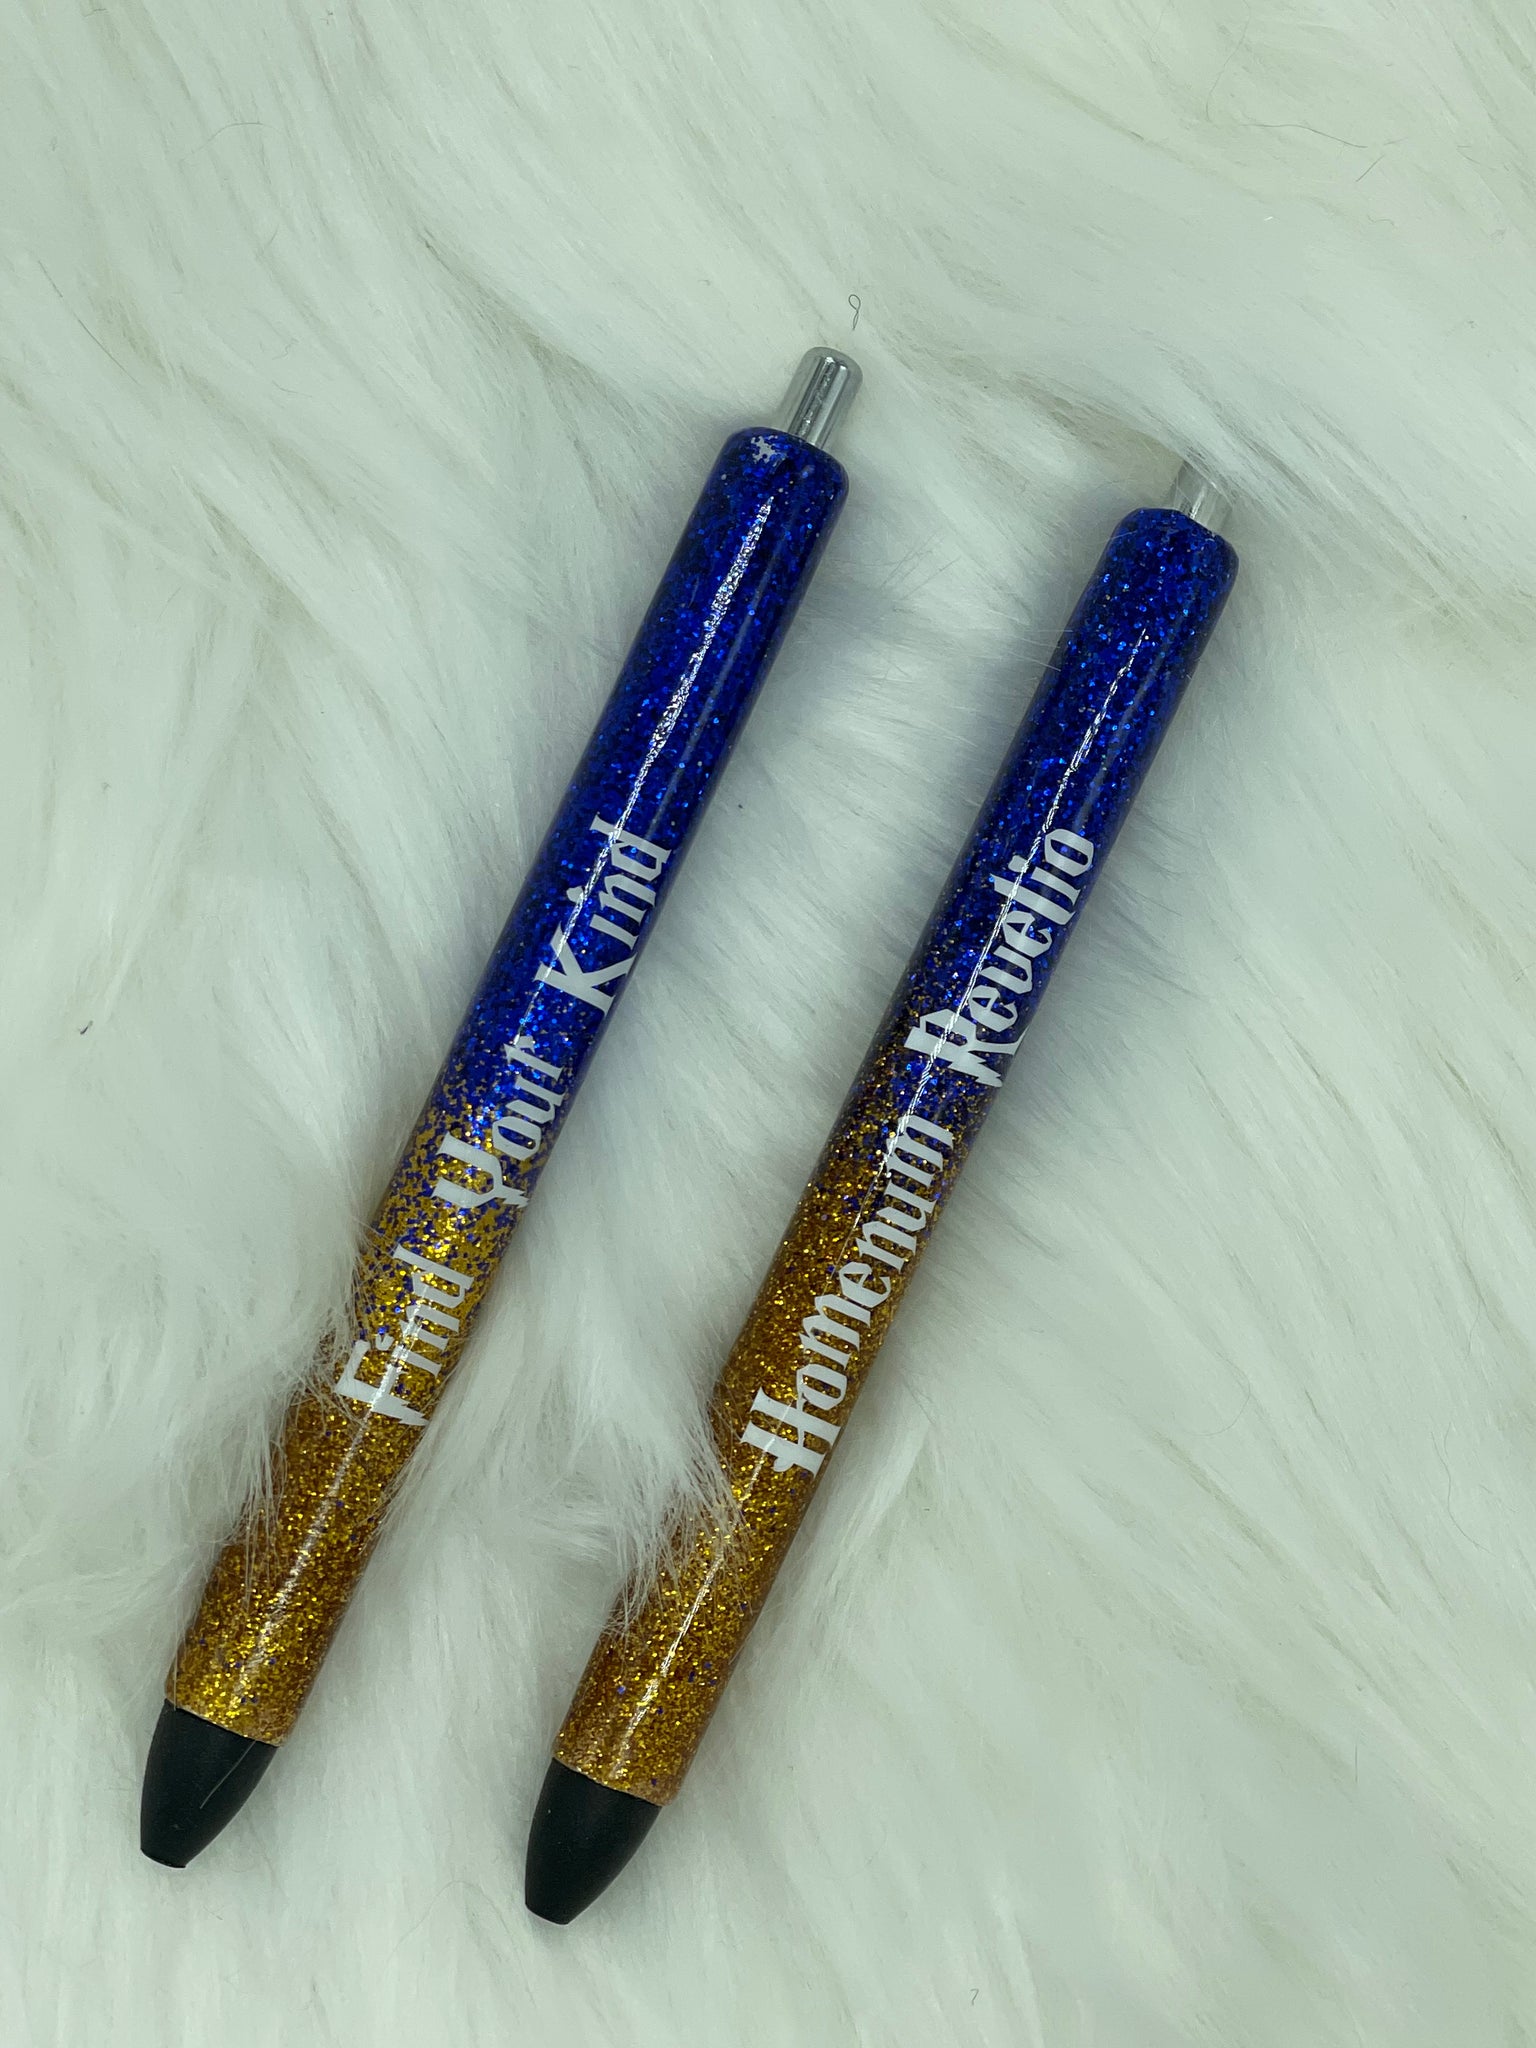 HP Inspired Wizard Houses Glitter Pen Starter Kits with UV Resin Skim Coat  & Charms